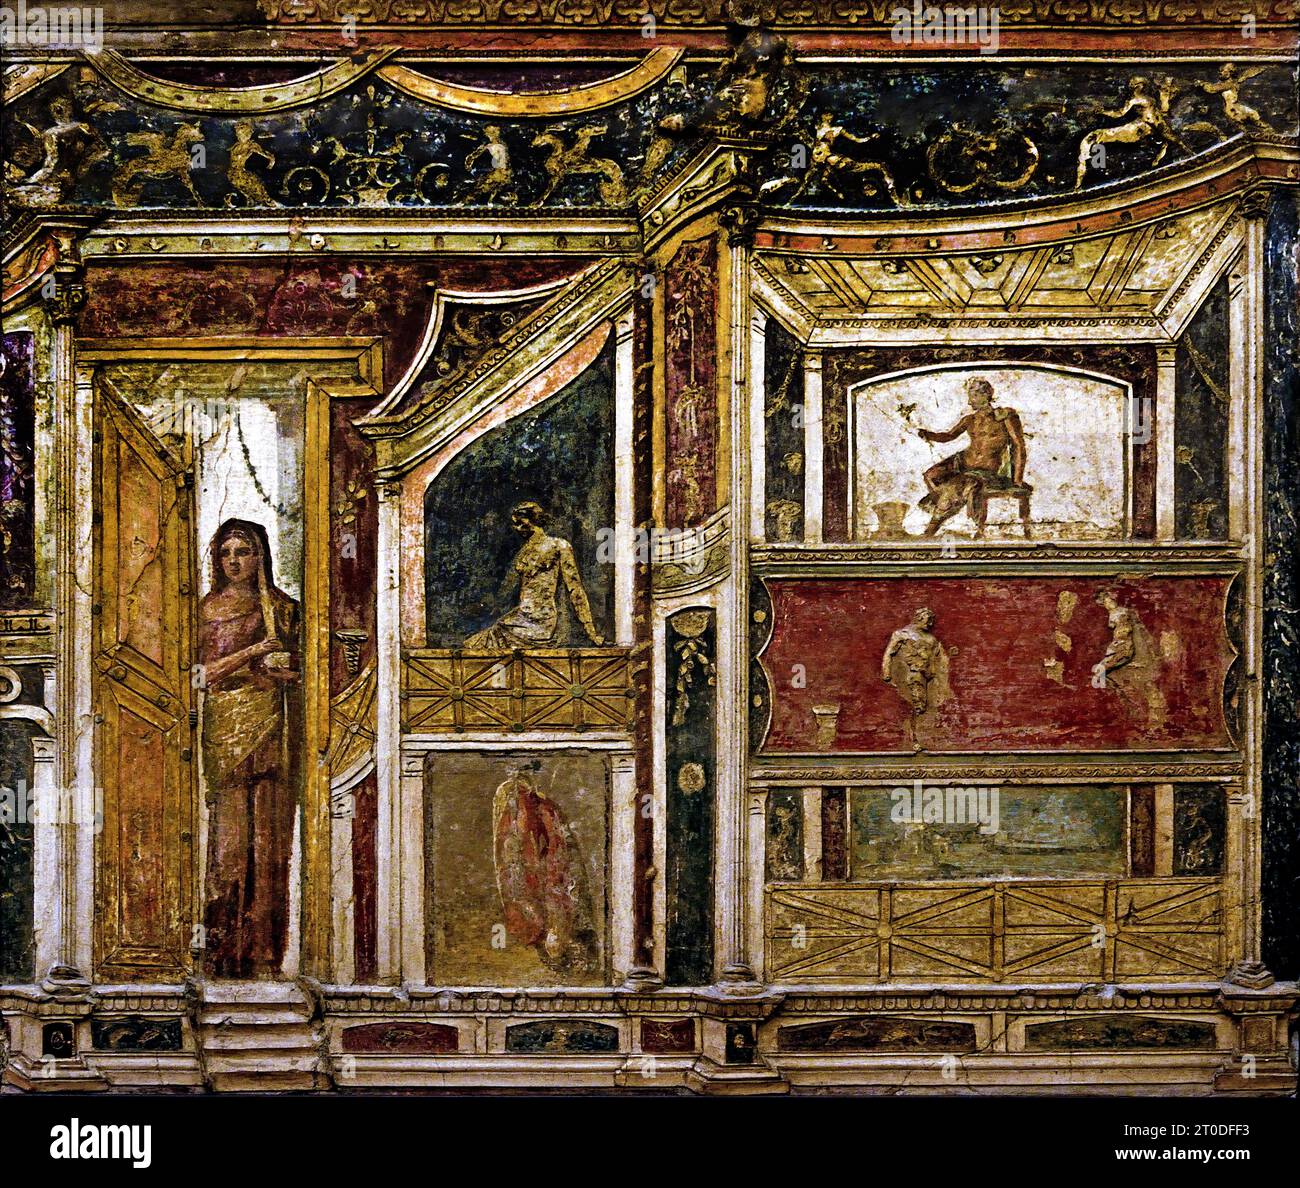 Ornamenti architettonici e immagini figurative di mitologia. La città romana di fresco Pompei si trova vicino a Napoli, nella regione Campania. Pompei fu sepolta sotto 4-6 m di cenere vulcanica e pomice nell'eruzione del Vesuvio nel 79 d.C. Italia Foto Stock